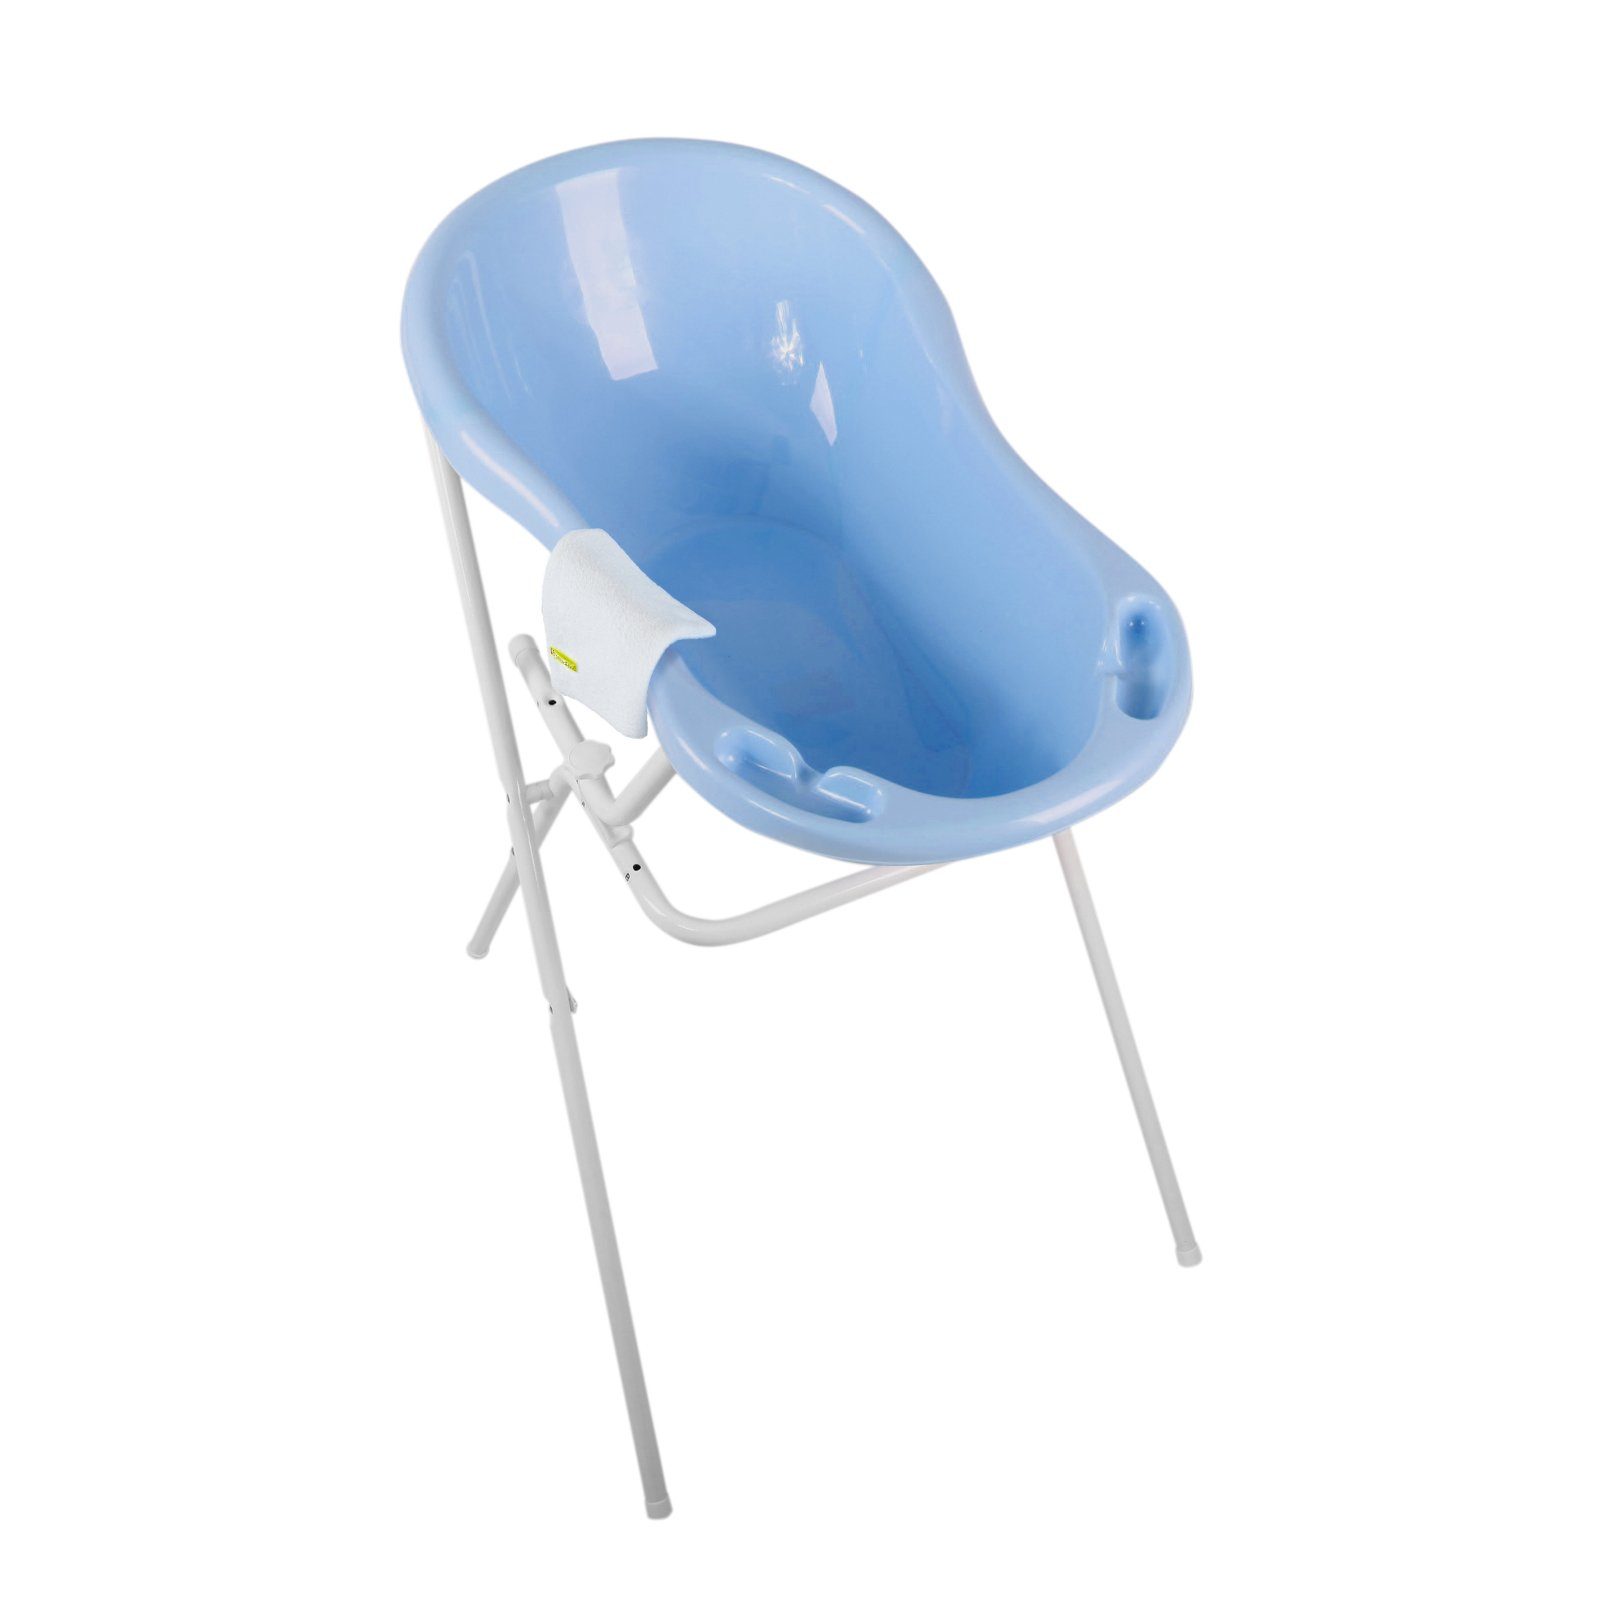 KiNDERWELT Babybadewanne Babywanne blau 84 cm + Ständer + Waschhandschuh, (3er Set)